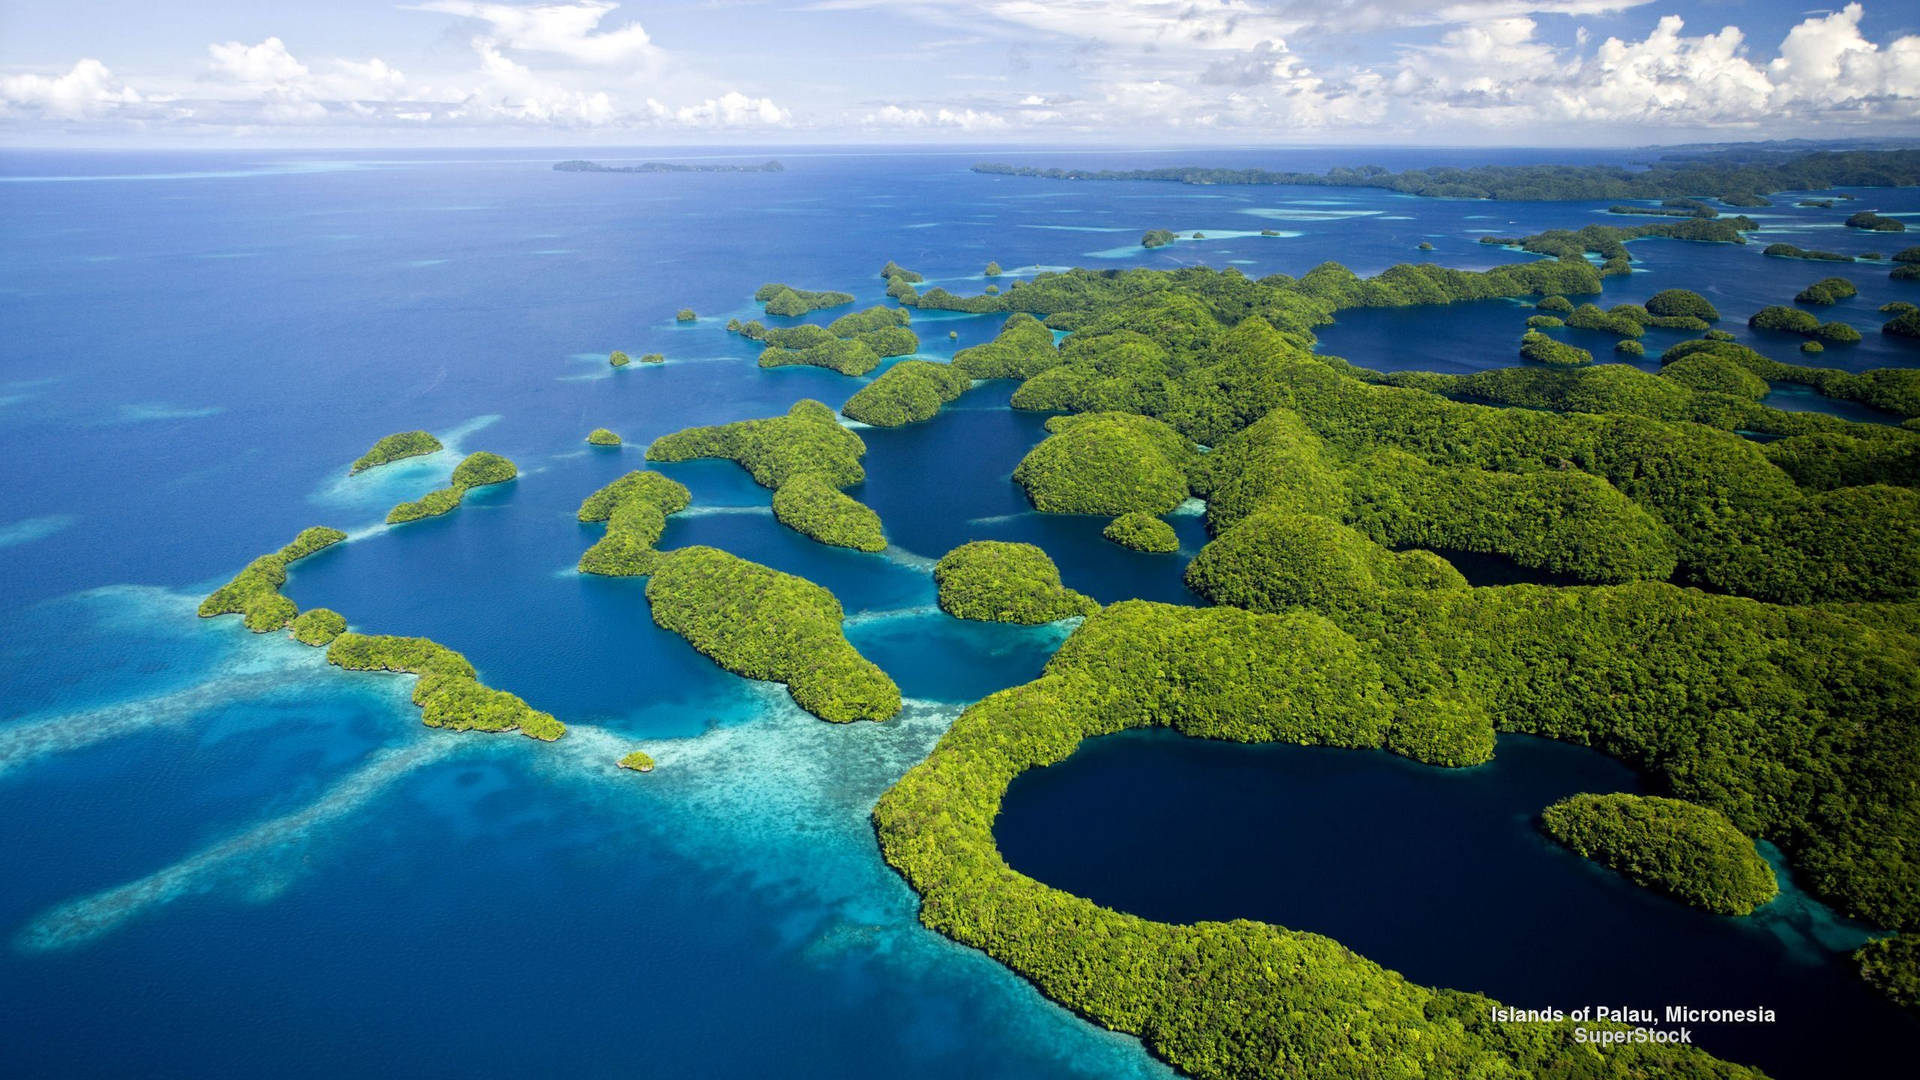 Palau Micronesia Islands